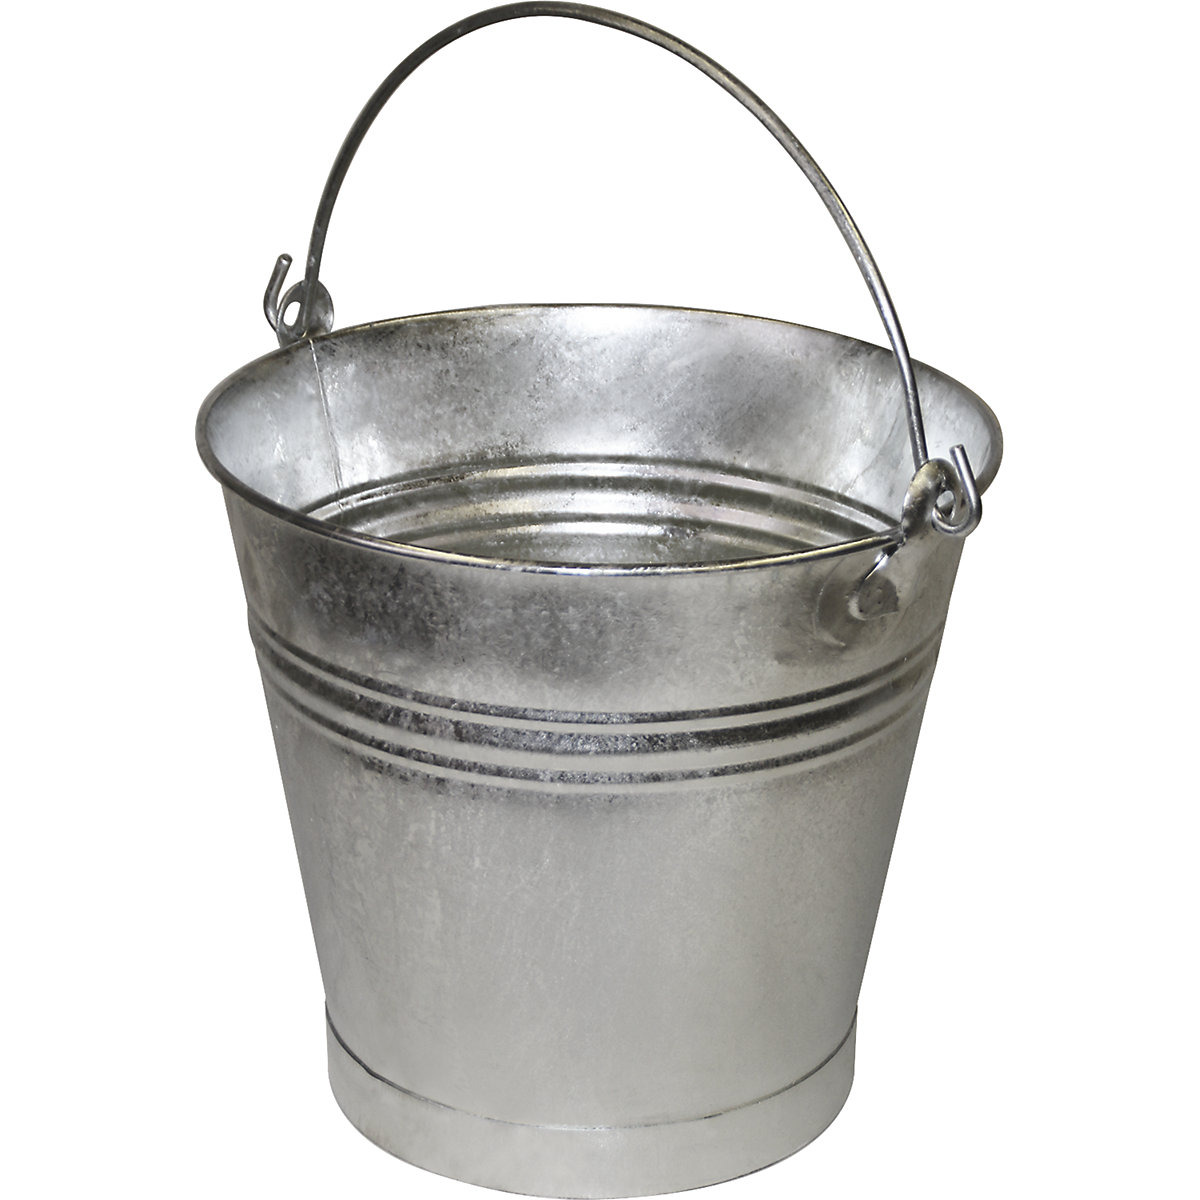 Ocelový kbelík s nosnou rukojetí, nepropustný pro kapaliny